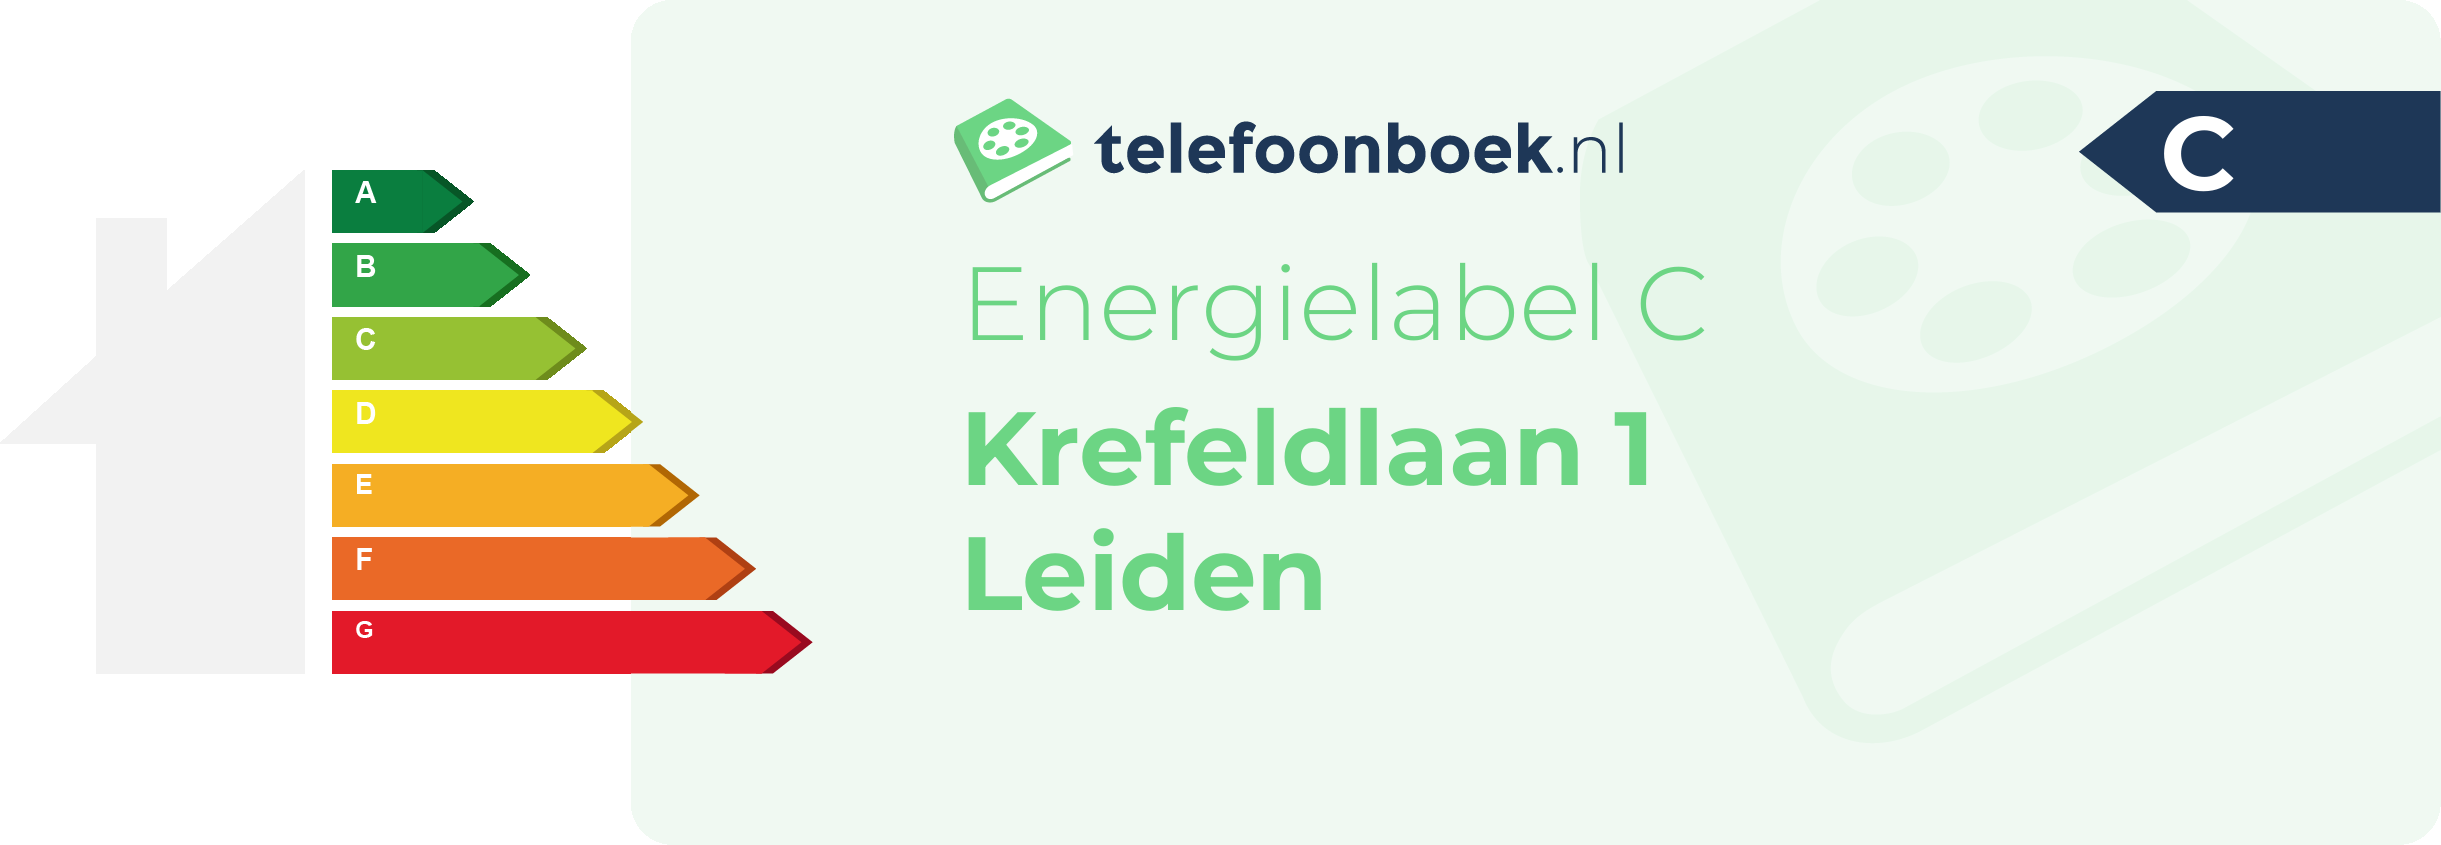 Energielabel Krefeldlaan 1 Leiden